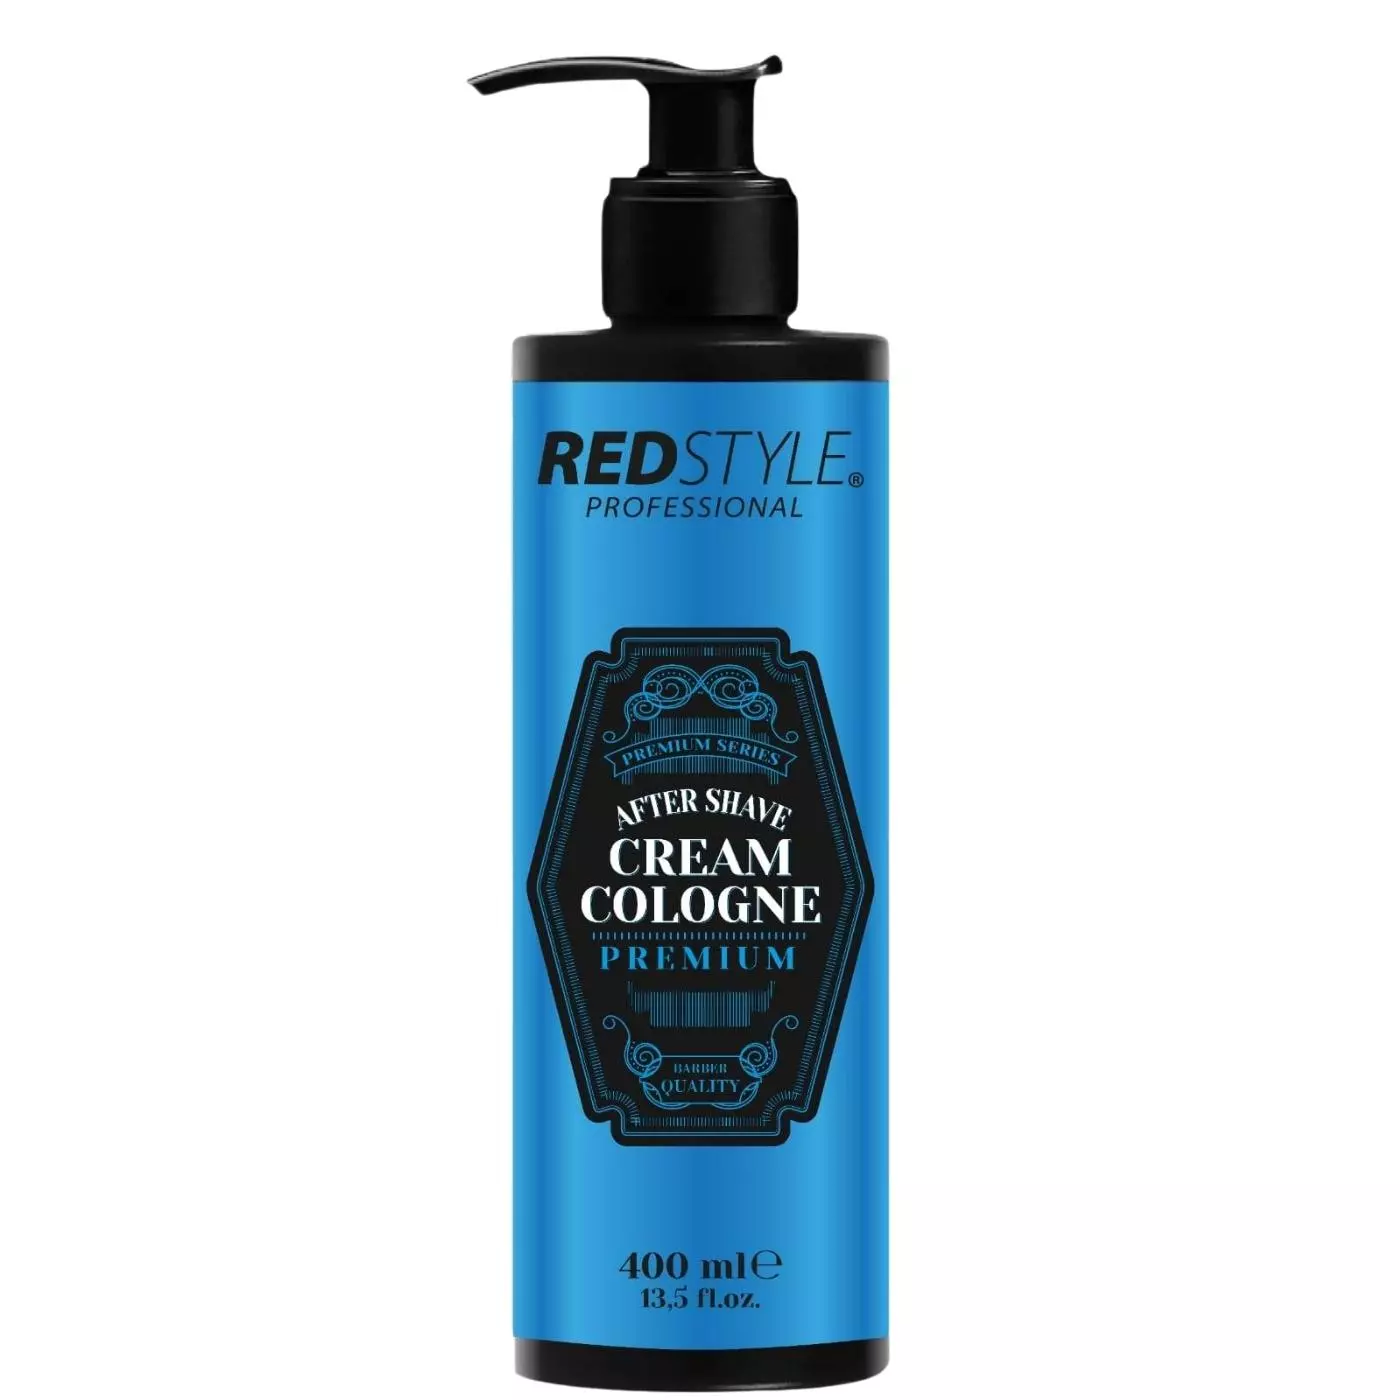 Redstyle Professional After Shave Cream Cologne - Balsam nach der Rasur, kühlt und  pflegt   premium